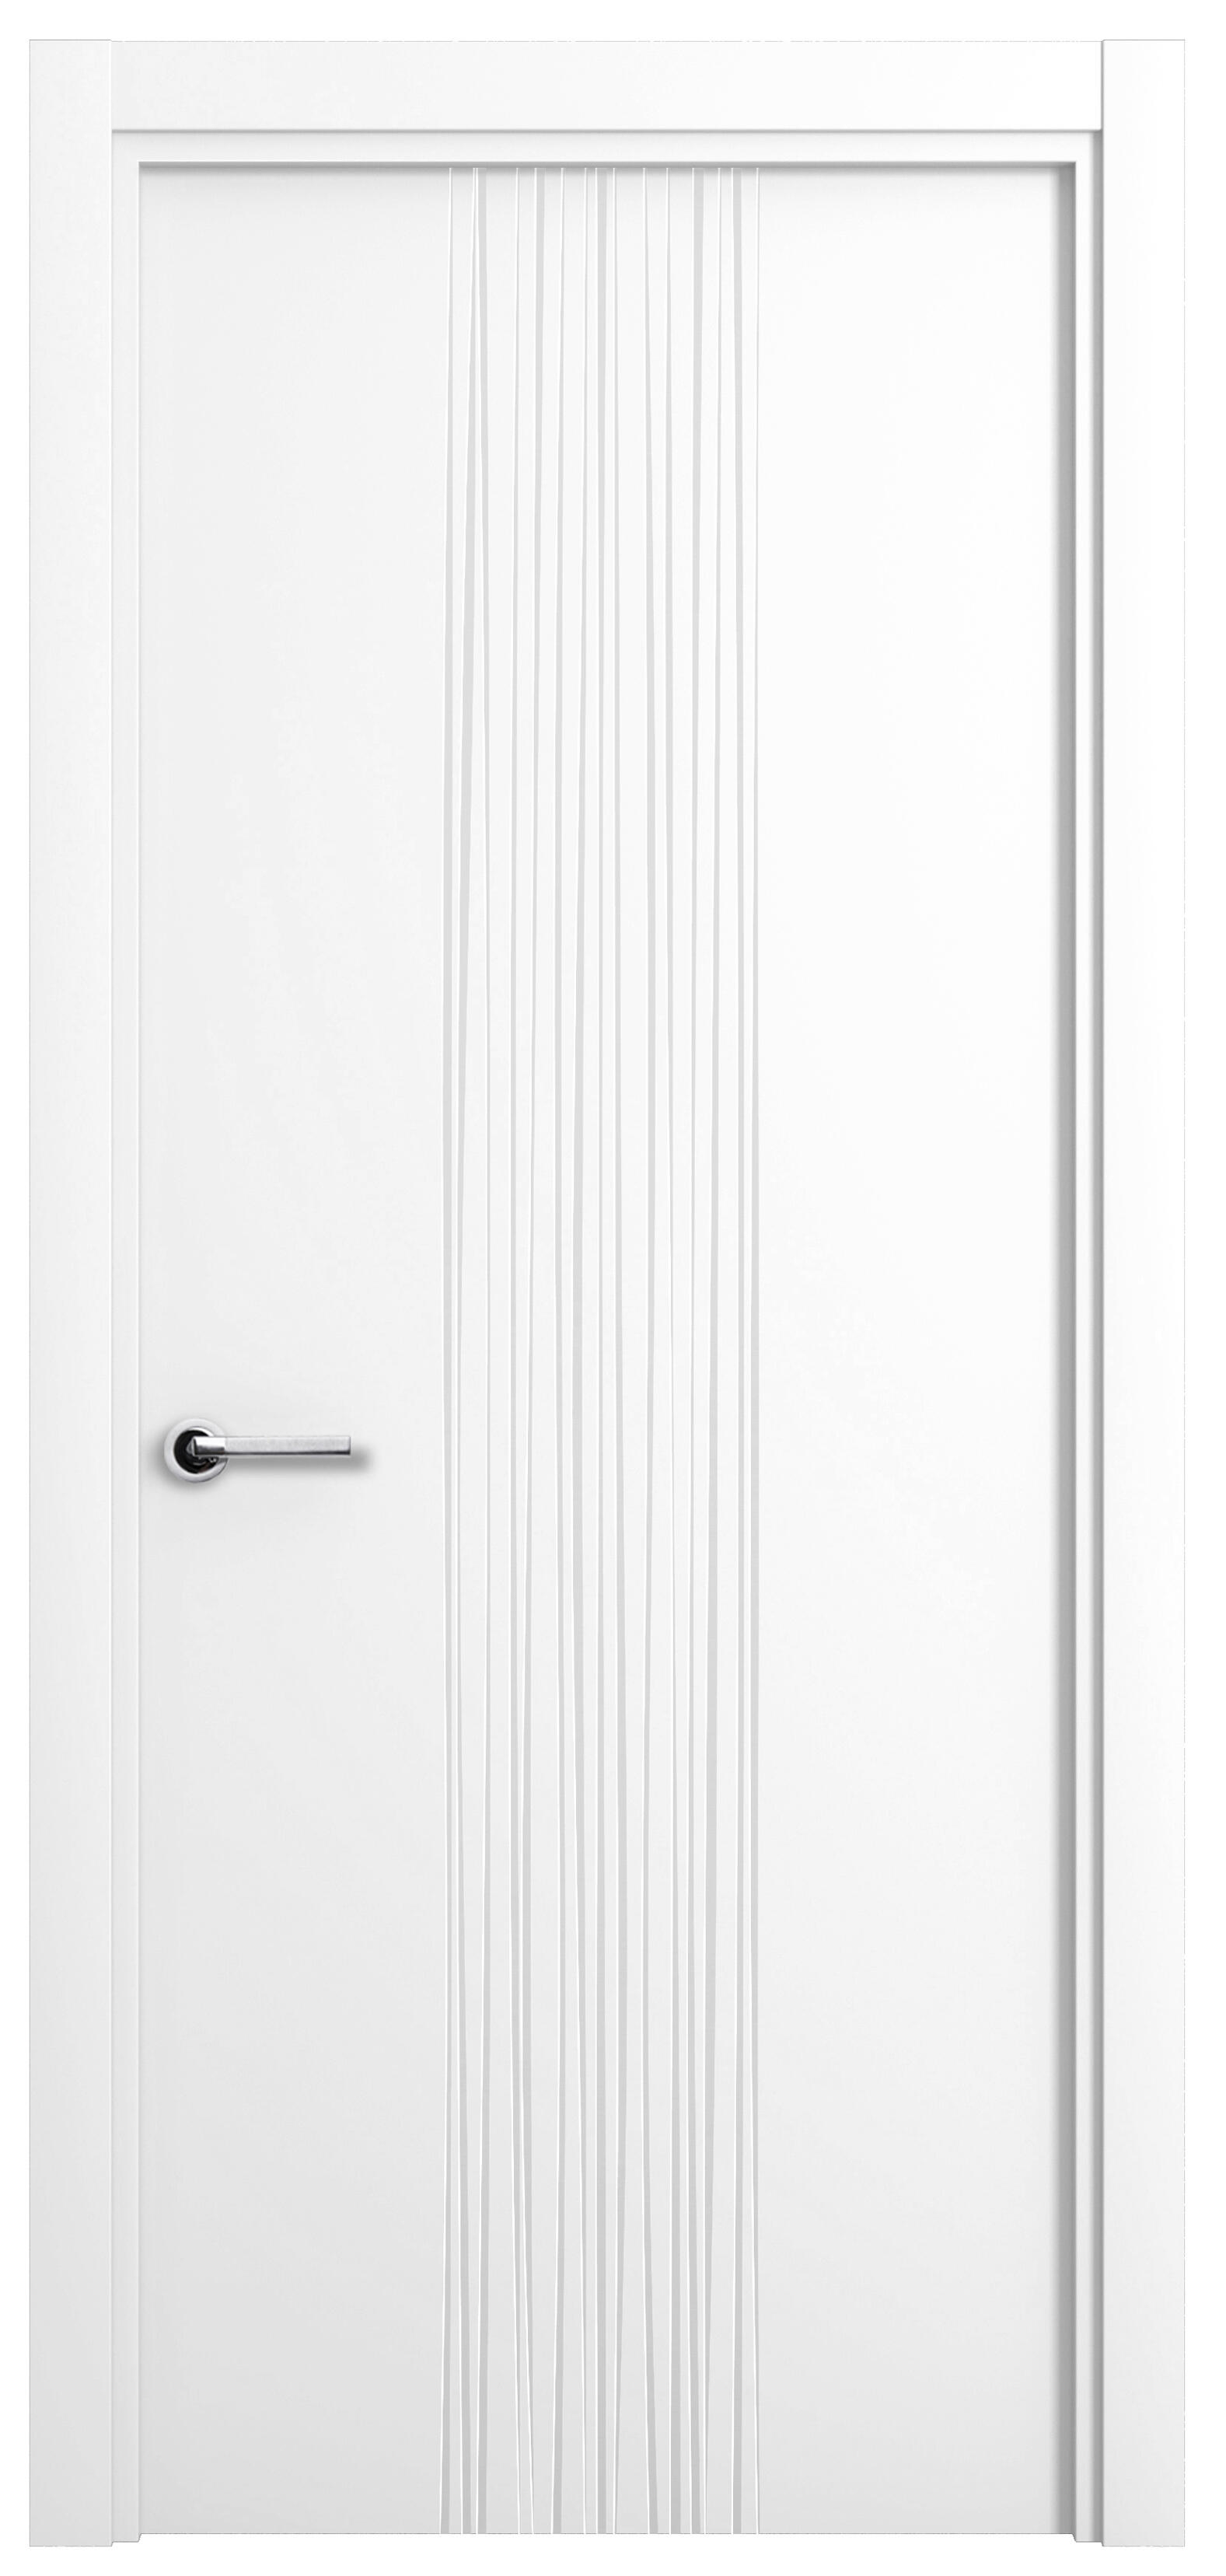 Puerta quevedo premium blanco apertura derecha 72.5cm